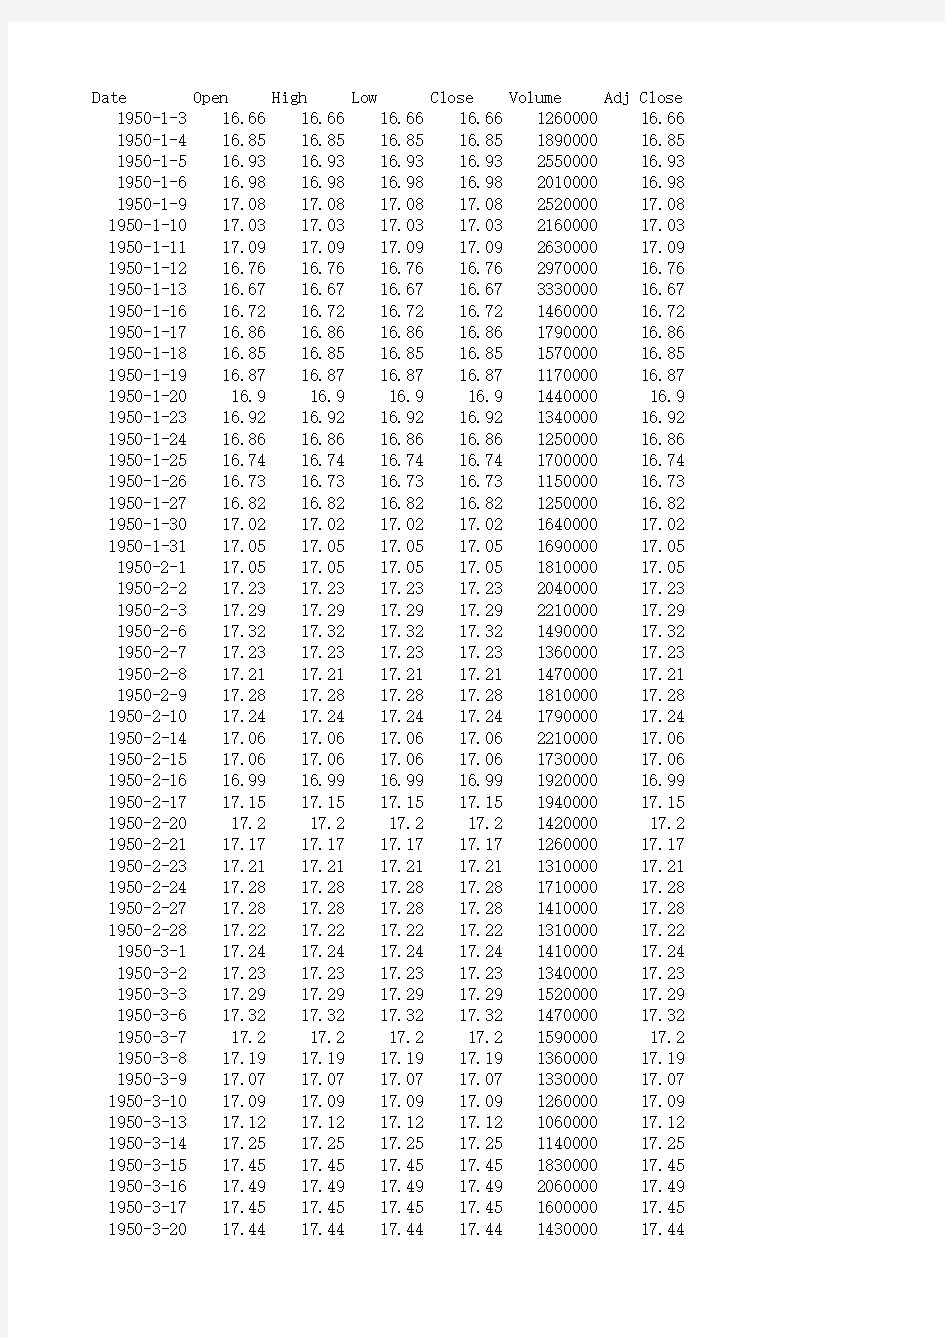 标准普尔500指数(1950-2012)每日数据